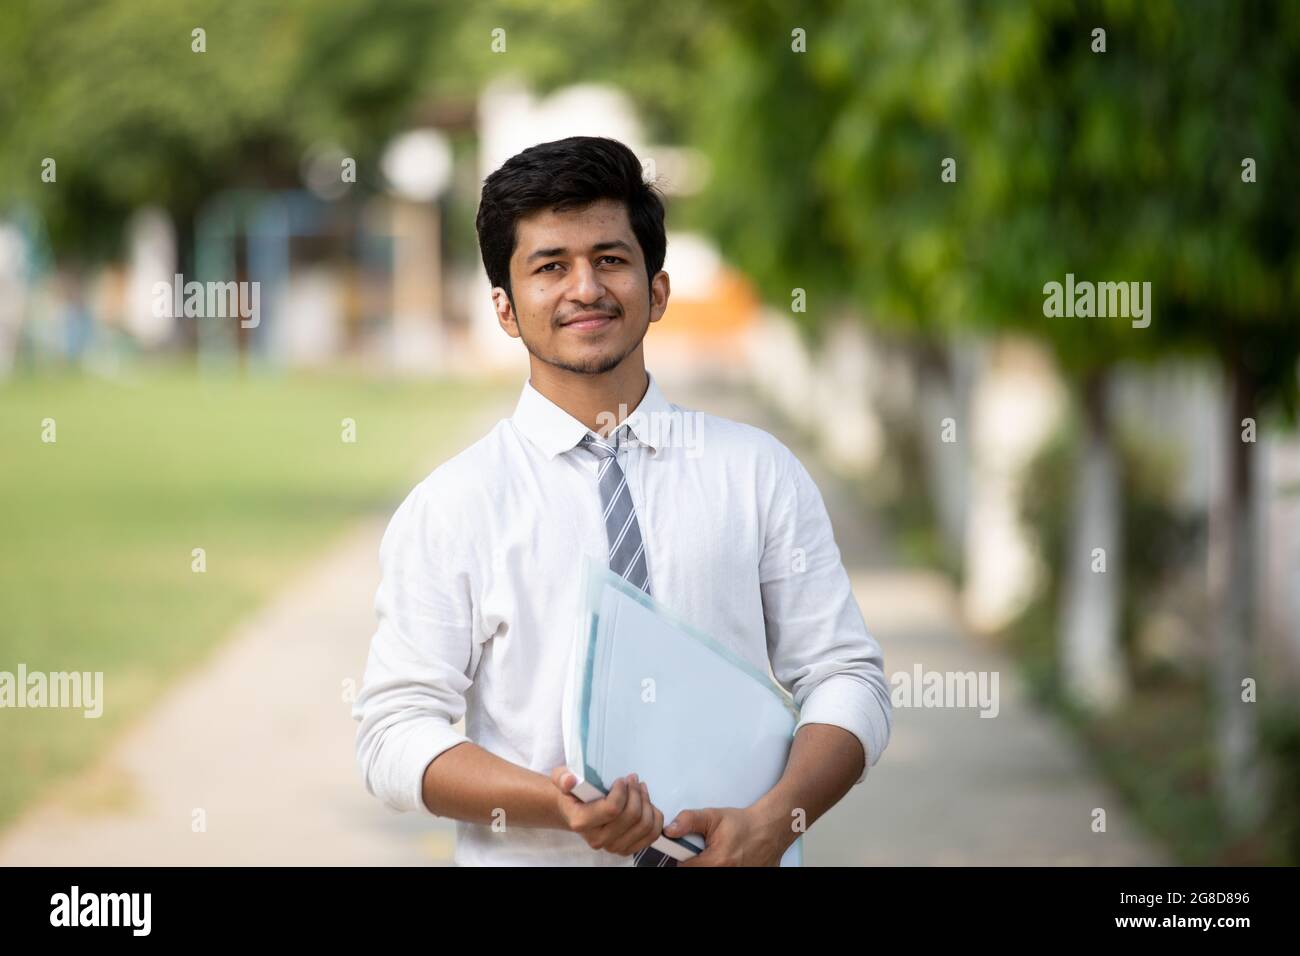 Frontansicht des jungen männlichen Studenten auf dem Campus mit negativem Raum Stockfoto